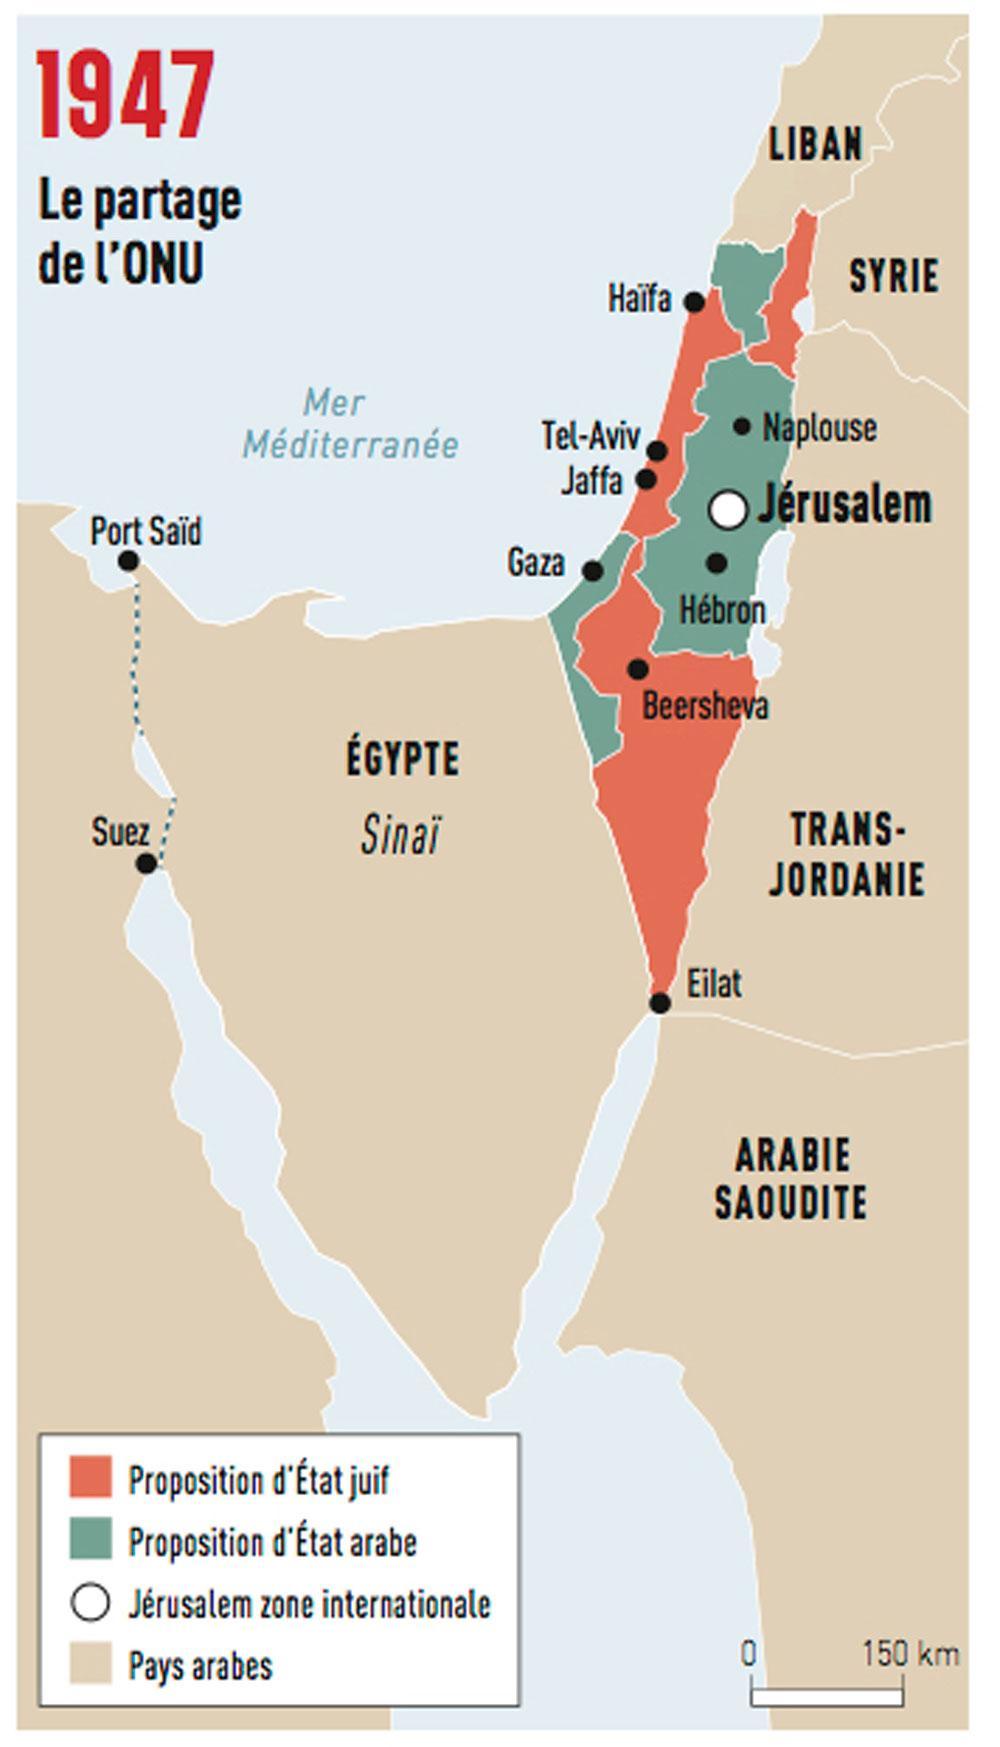 Le 29 novembre 1947, l'ONU approuve la création d'un Etat juif par 33 voix pour, 13 contre et 10 abstentions, dont celle de la Grande-Bretagne. La résolution 181 prévoit le partage de la Palestine en huit parties, trois pour l'Etat juif, quatre pour un Etat arabe (dont l'enclave de Jaffa) et une huitième partie (Jérusalem et Bethléem) confiée à l'administration internationale de l'ONU. Au lendemain de la déclaration d'indépendance, le 15 mai 1948, les Etats arabes envahissent Israël.